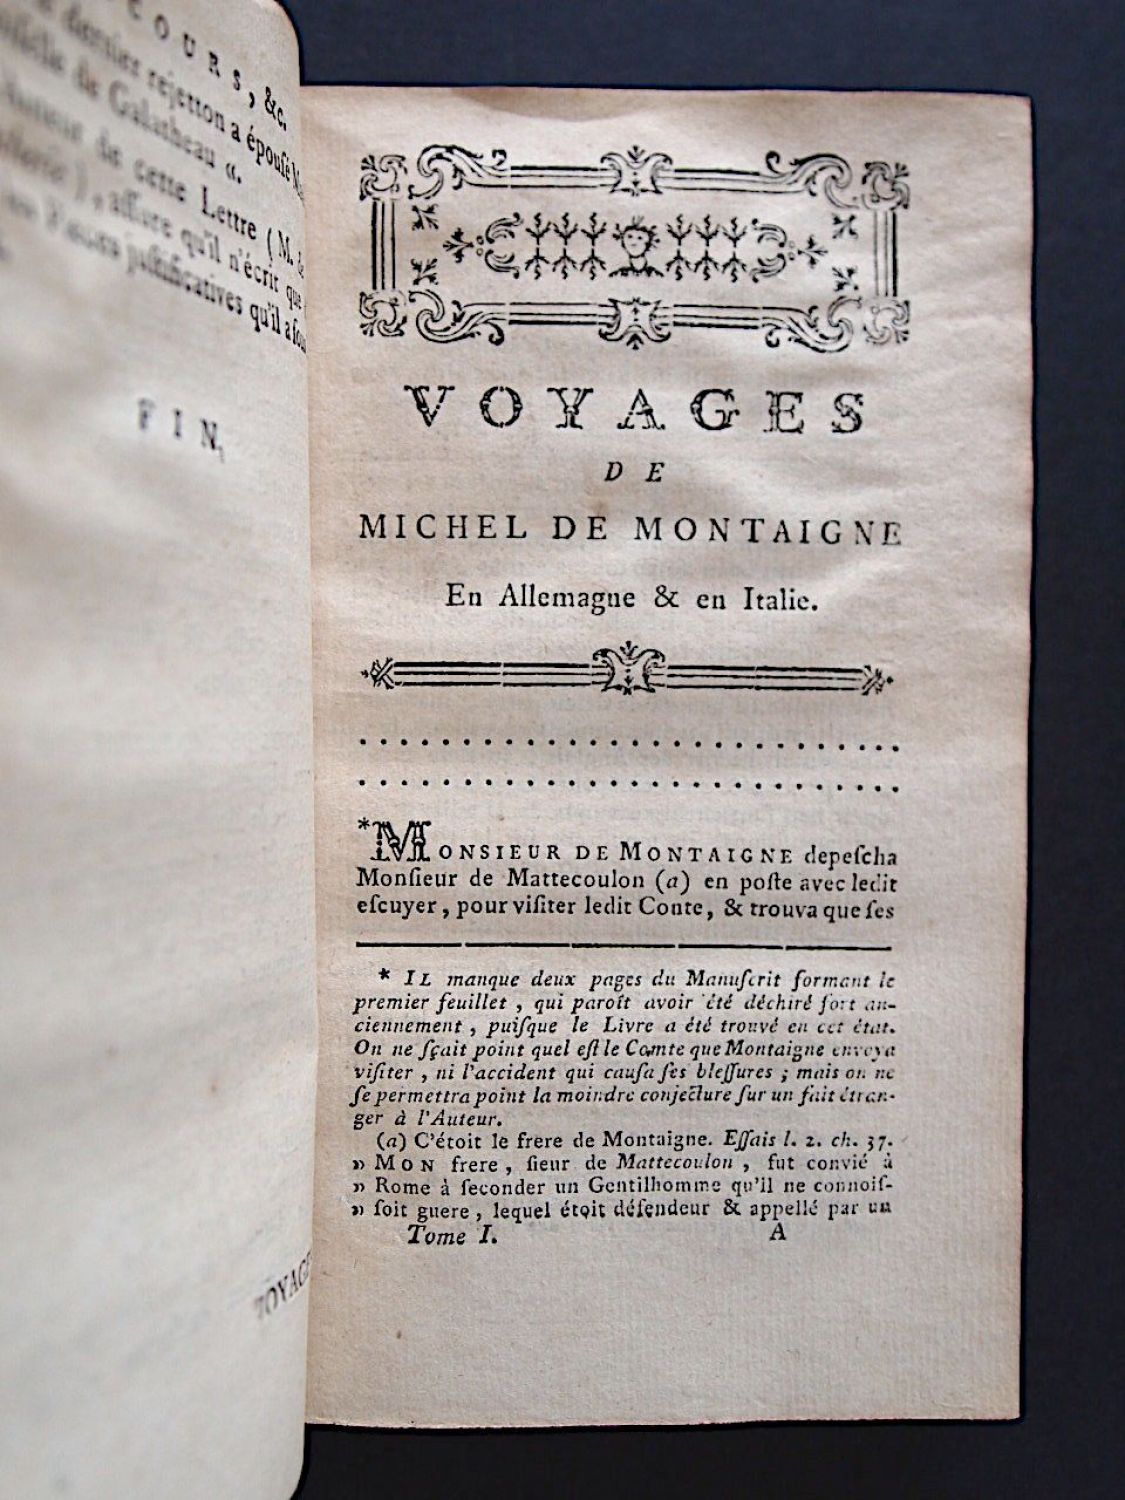 Journal de voyage - Michel de Montaigne 